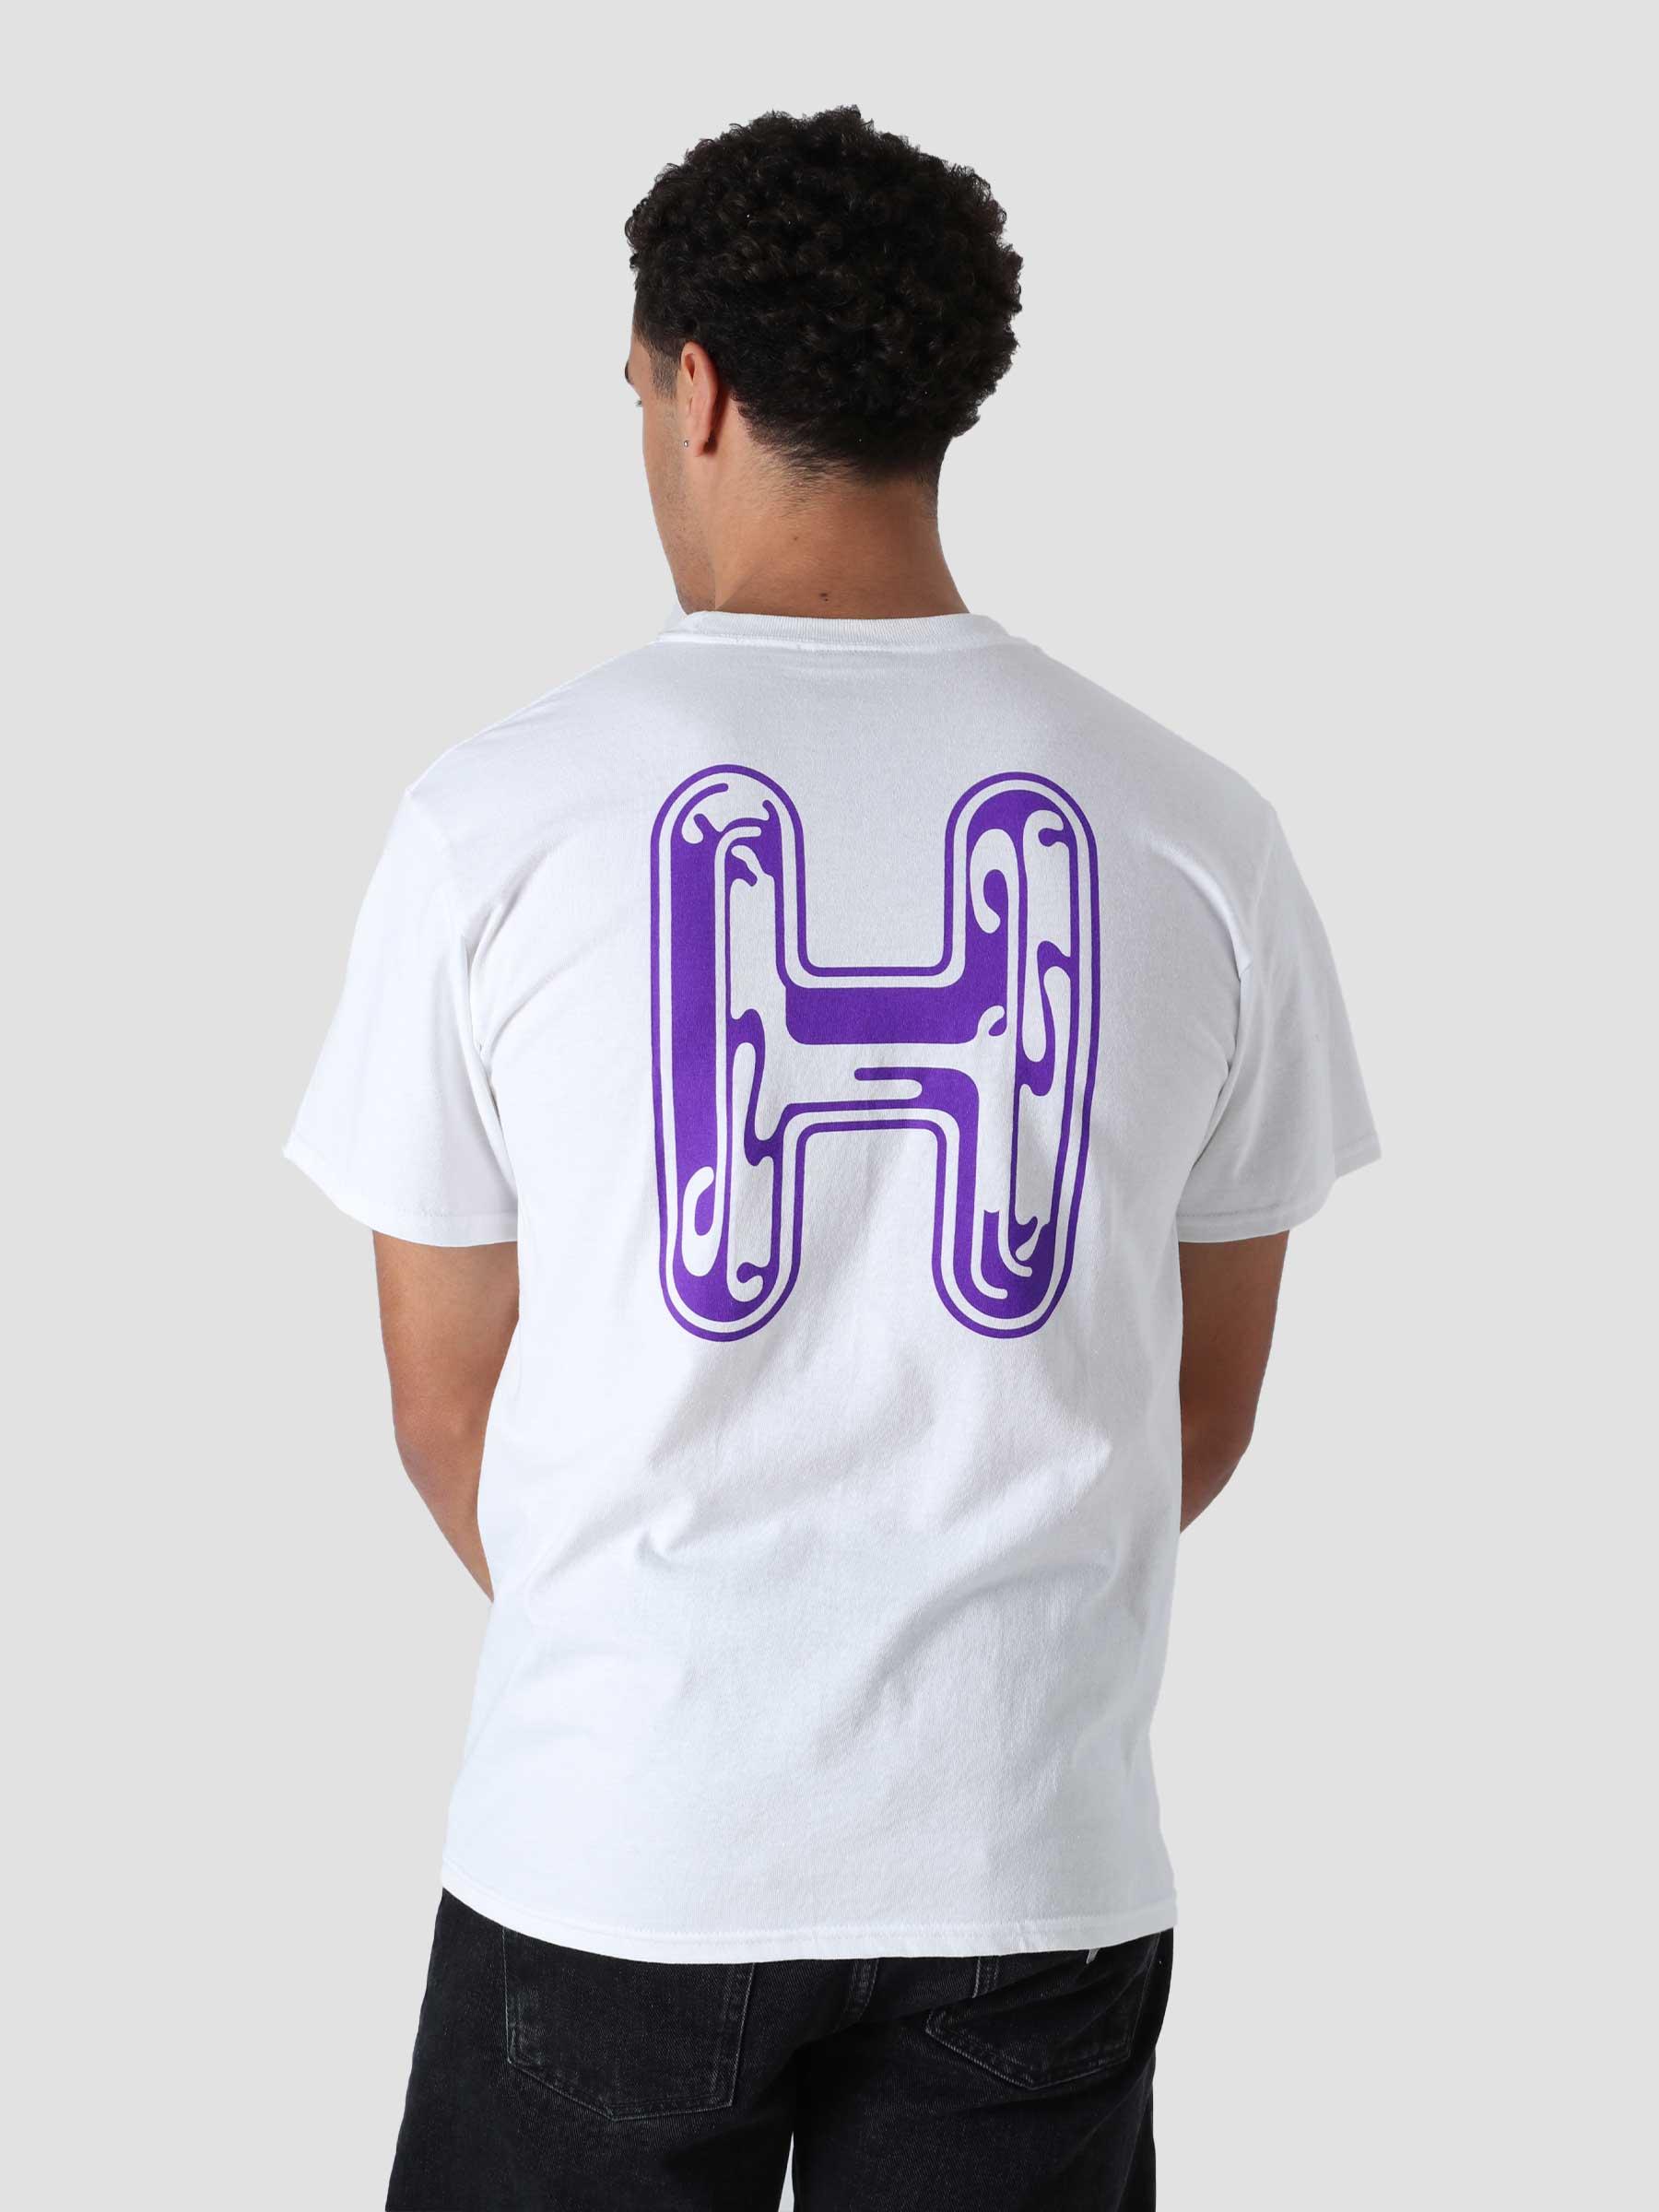 Common H S/S T-Shirt White TS01571